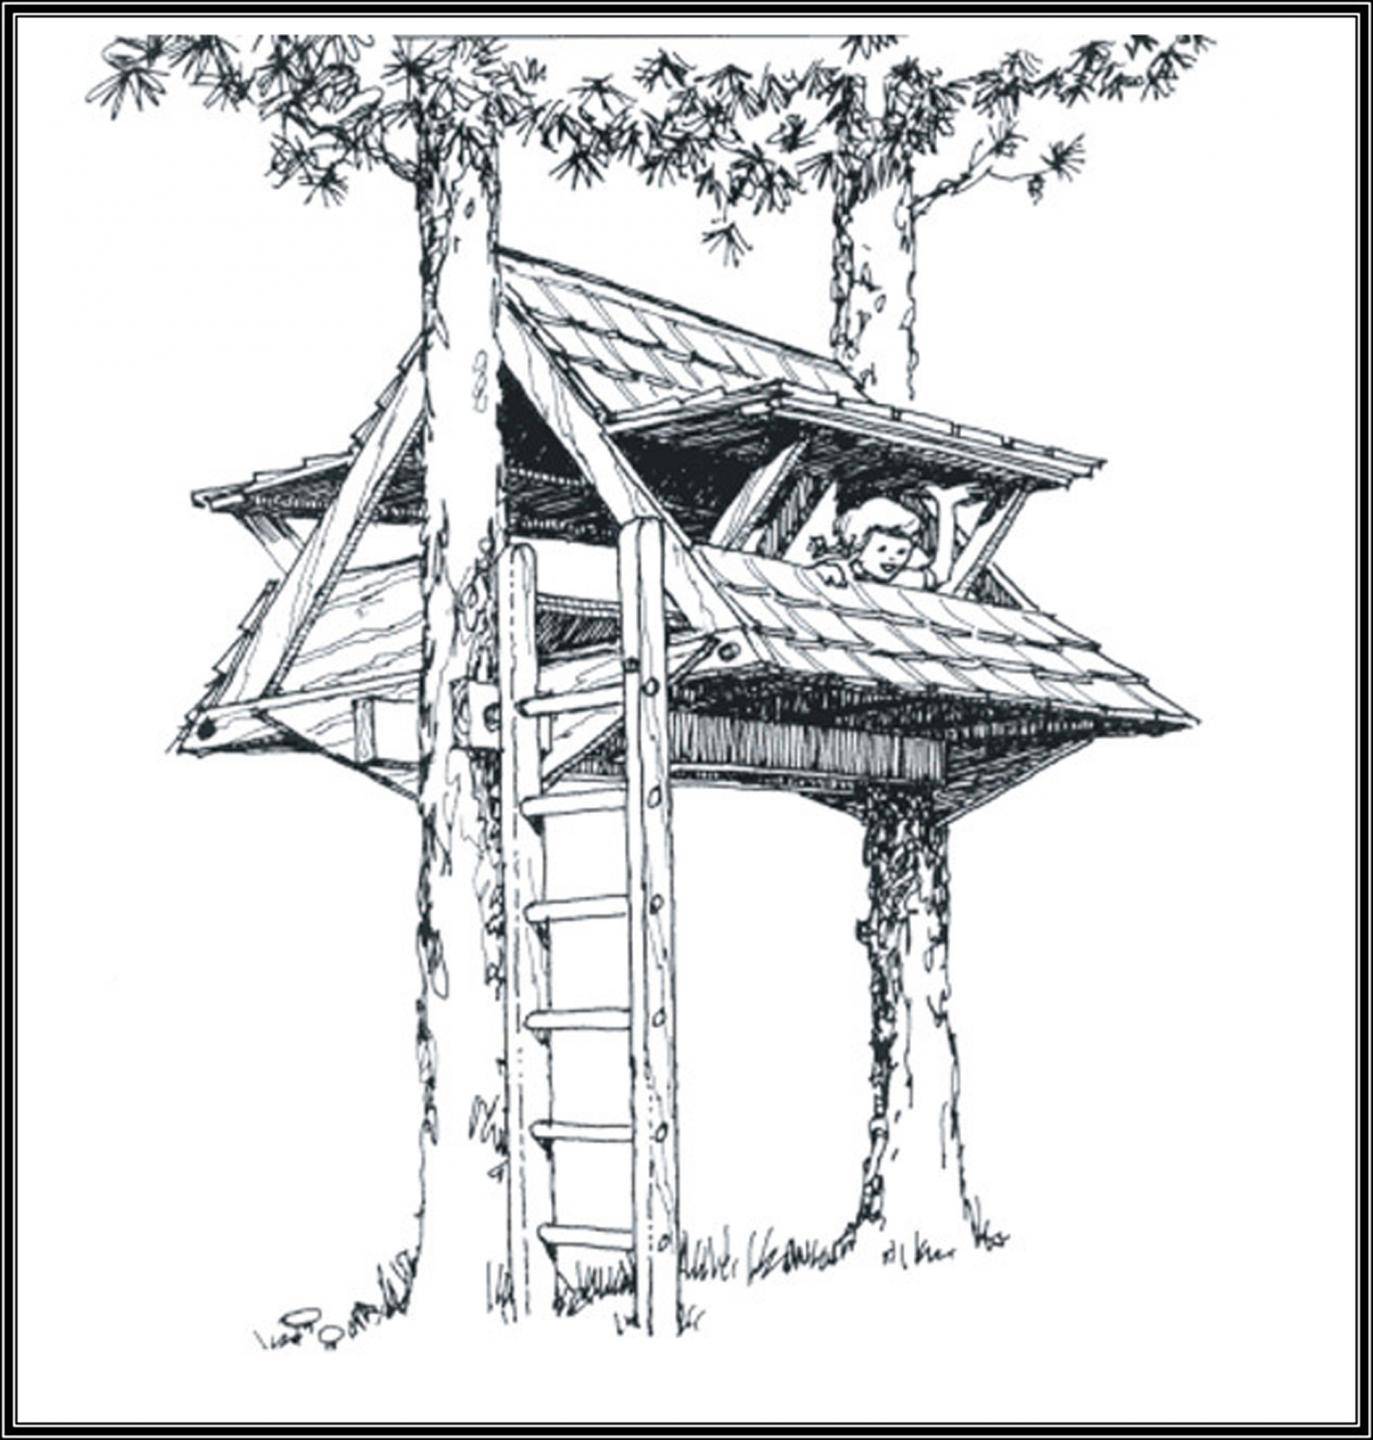 Как построить домик на дереве своими руками: поэтапное описание строительства шалаша